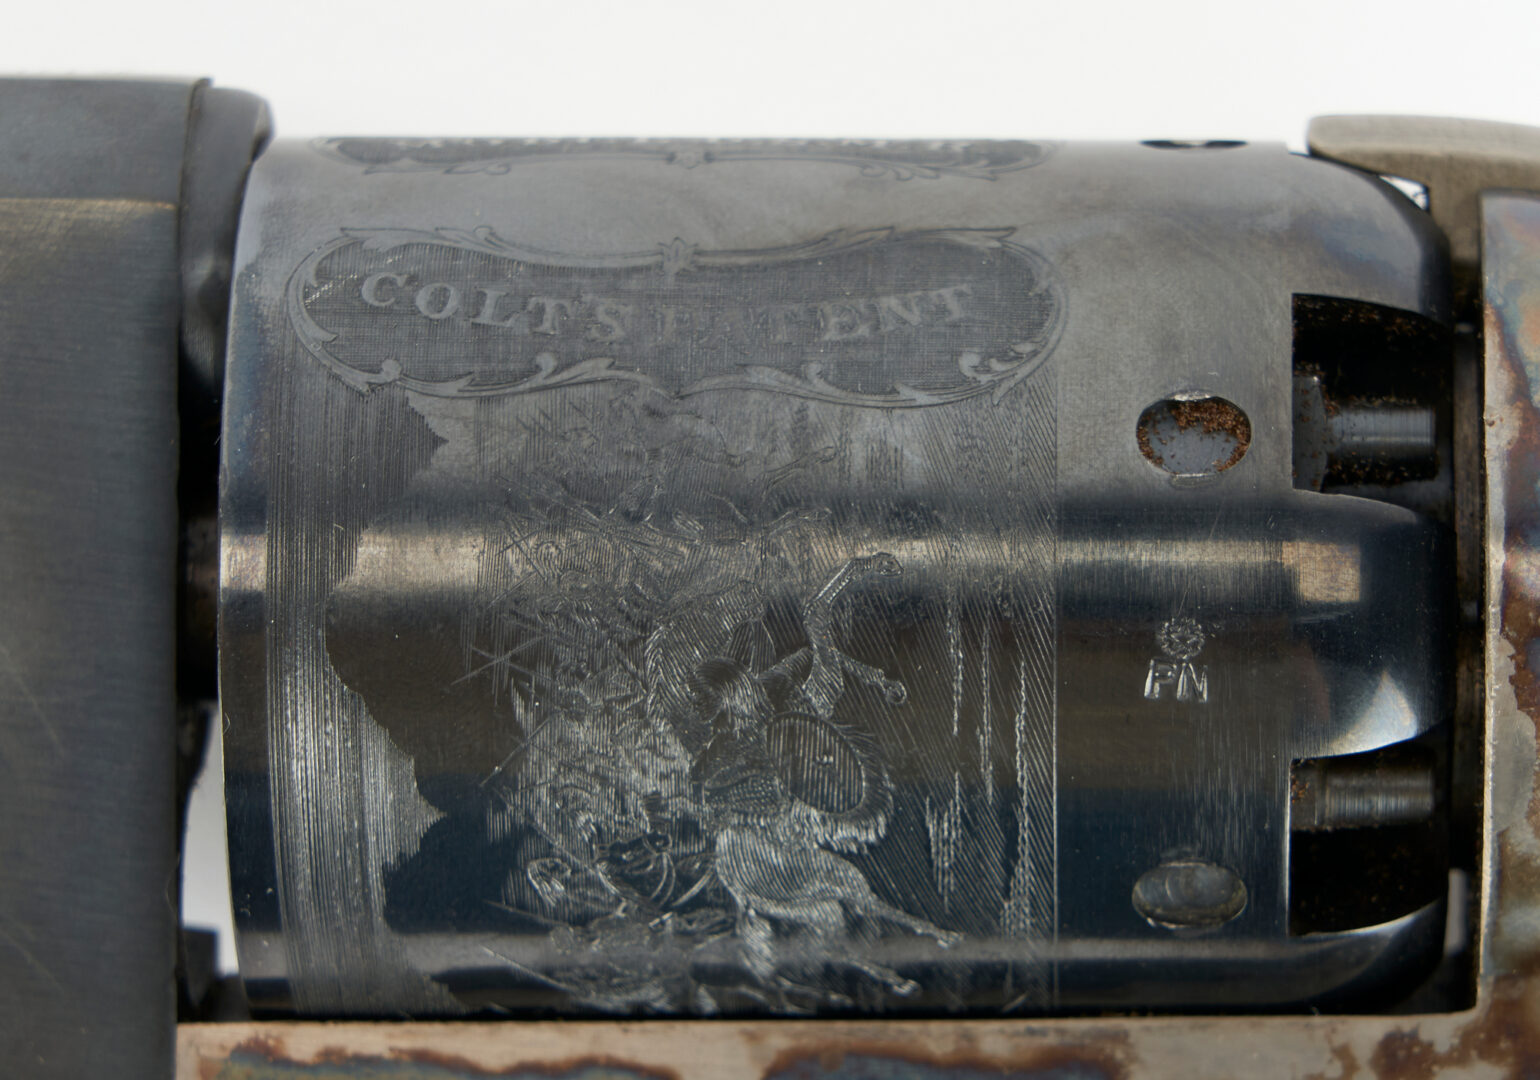 Lot 682: 2 Italian Repro. Colt Revolvers, incl. Walker Model 1847, Model 1871-72 Open Top